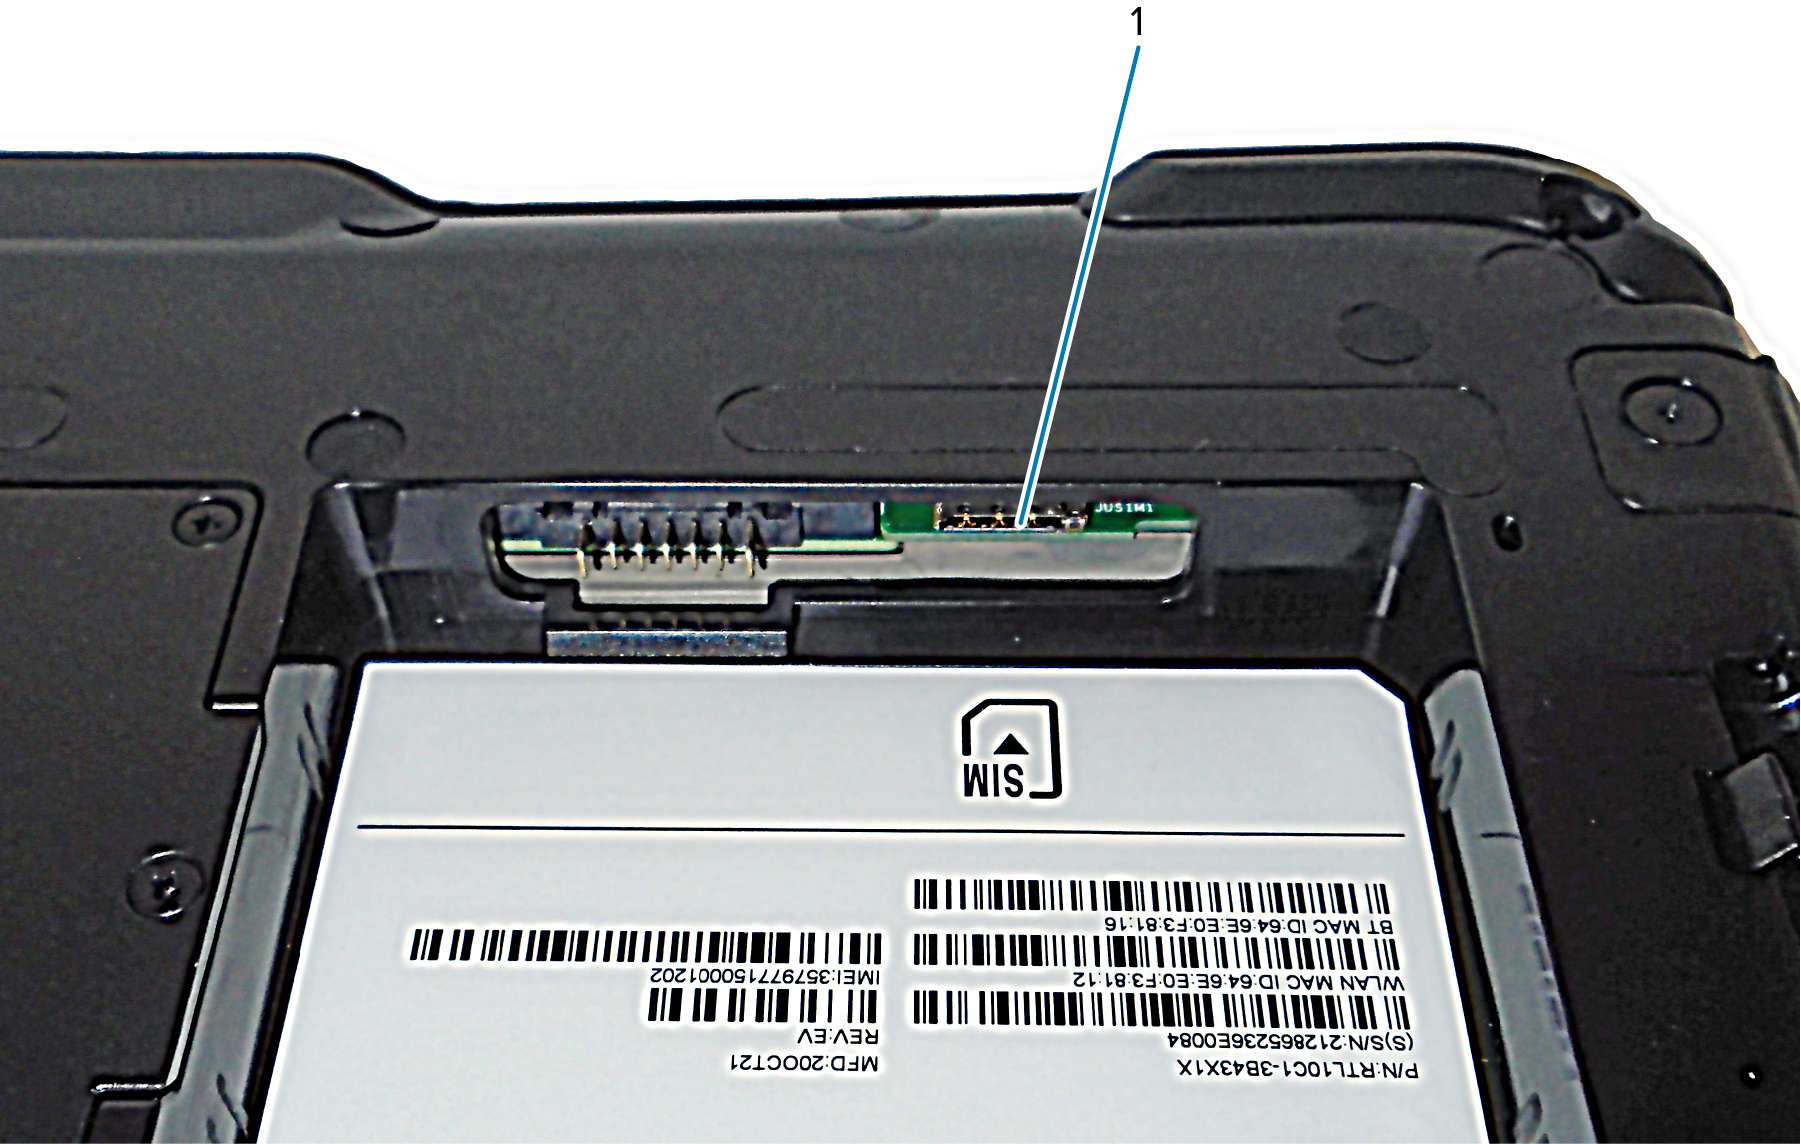 Слот SIM-карты устройства L10ax с поддержкой WWAN